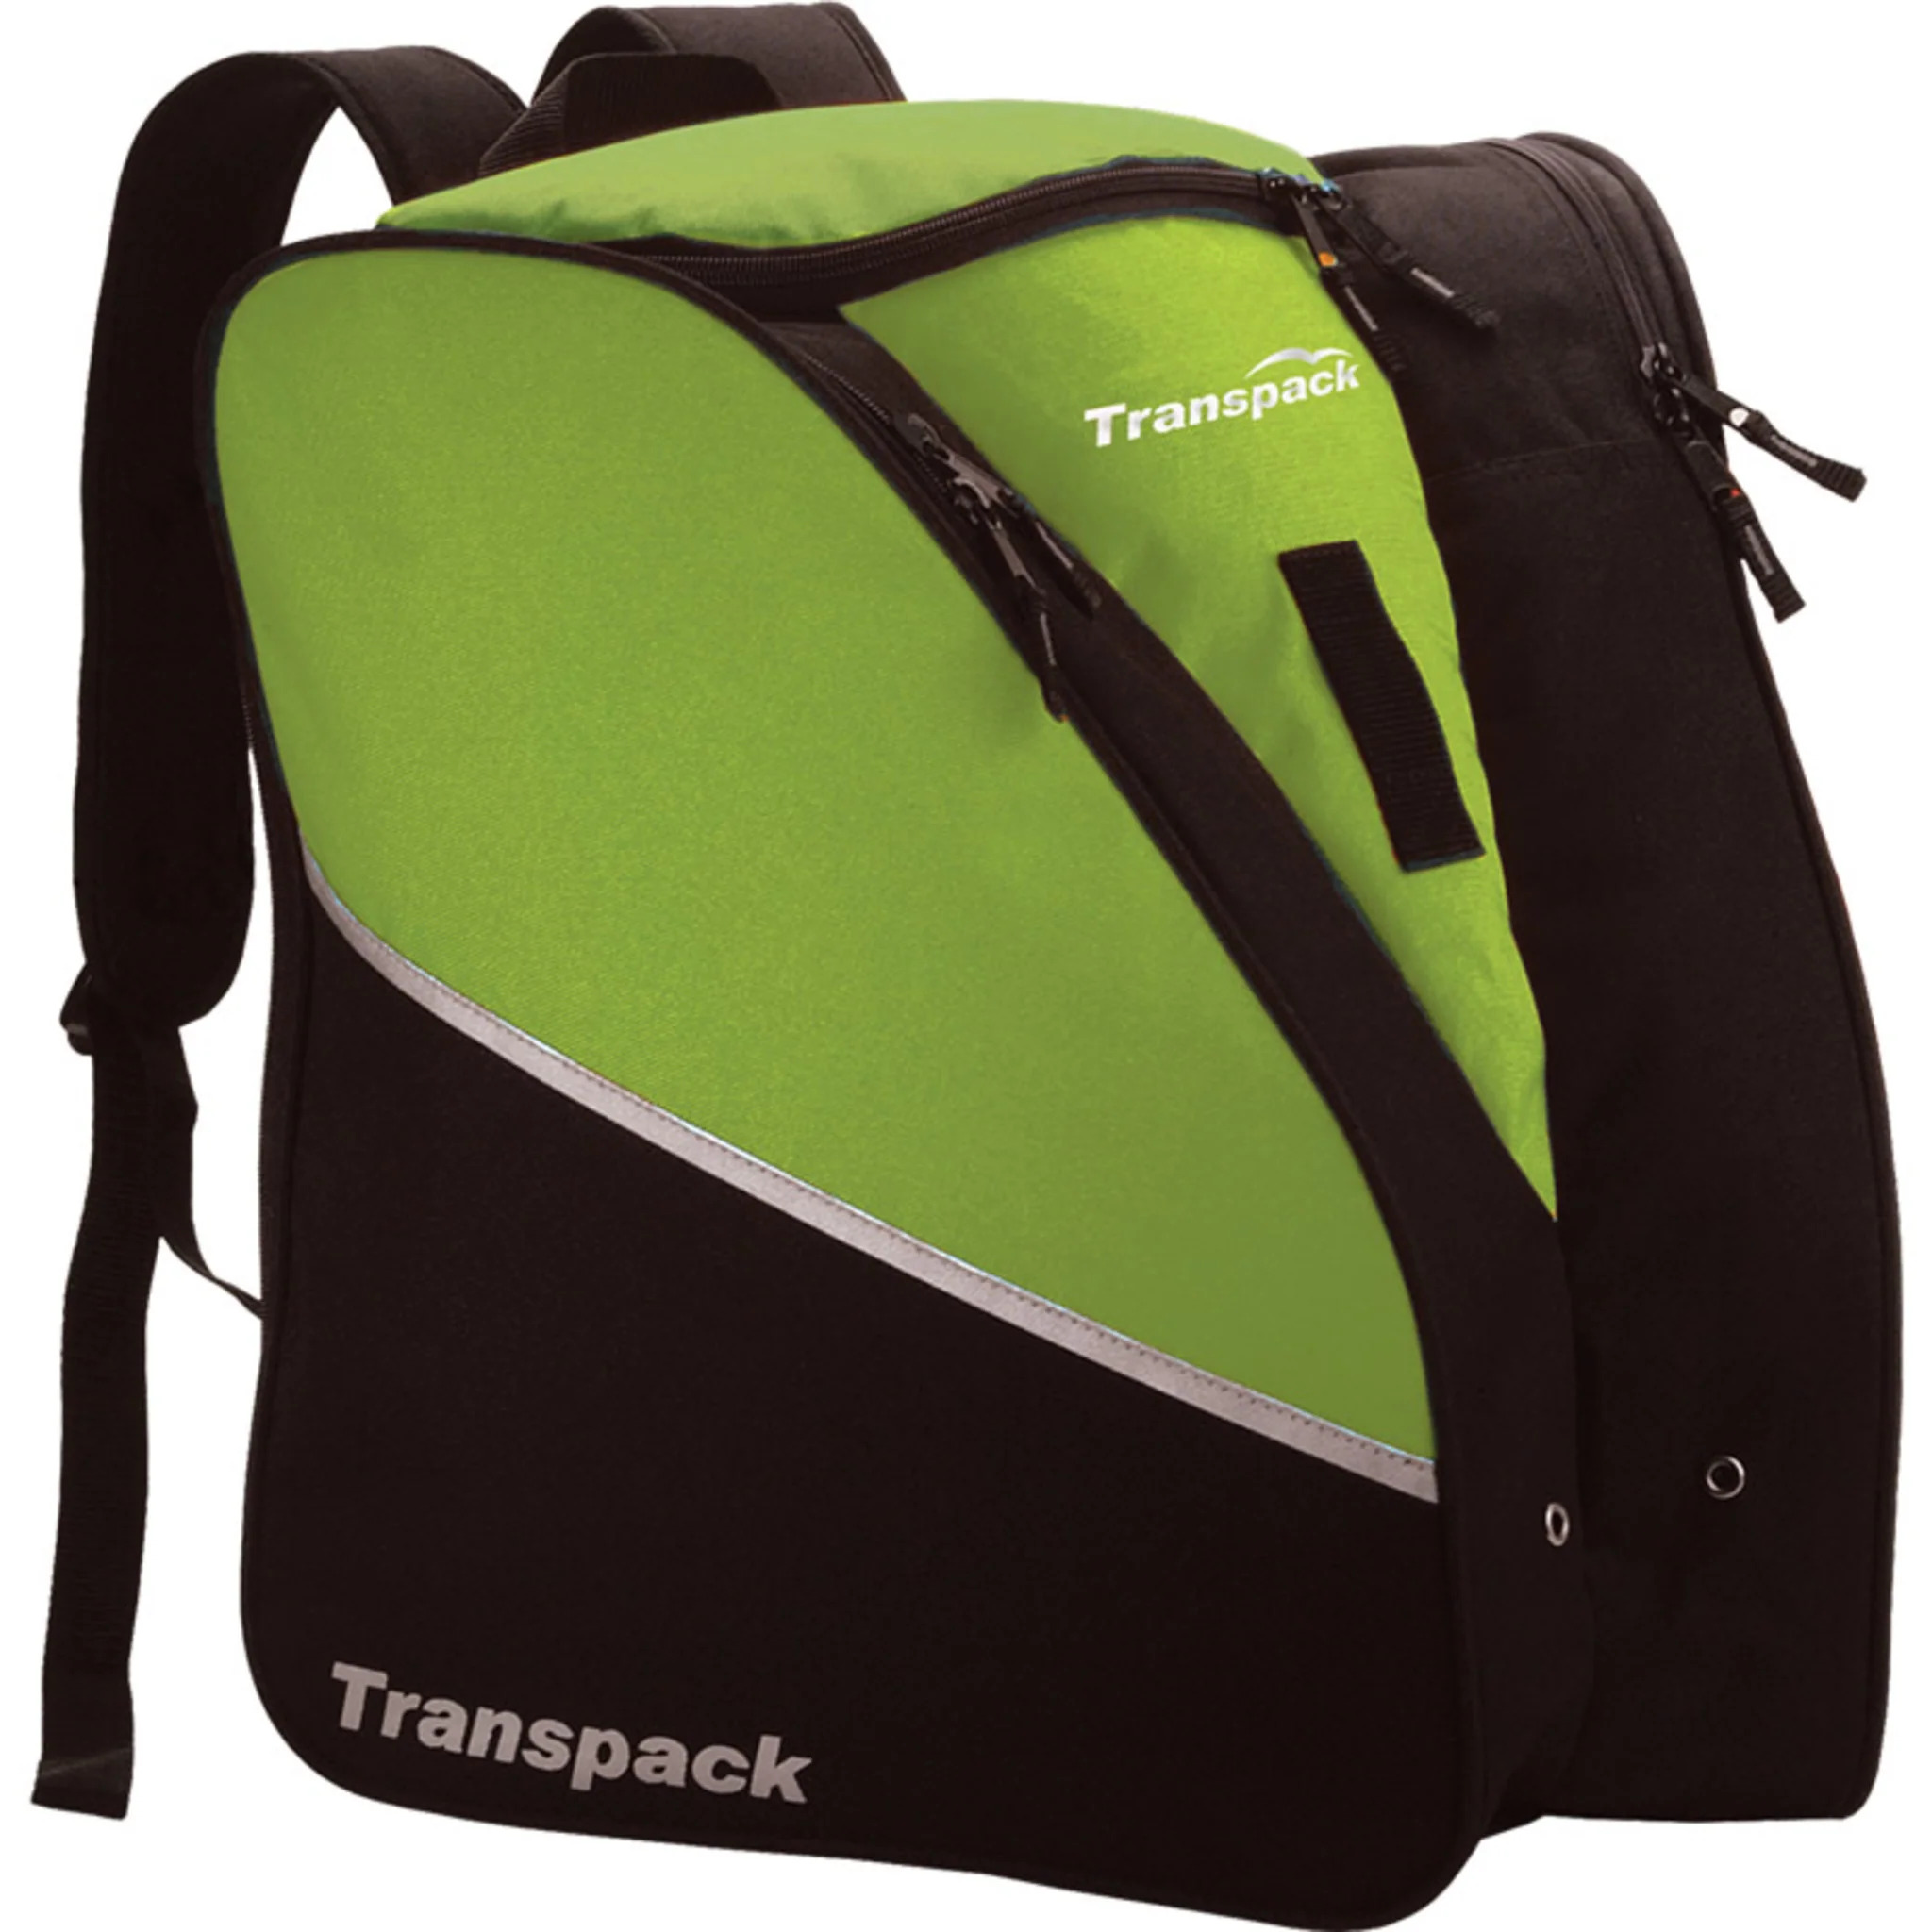 Transpack Edge Boot Bag-Black - image 2 of 8